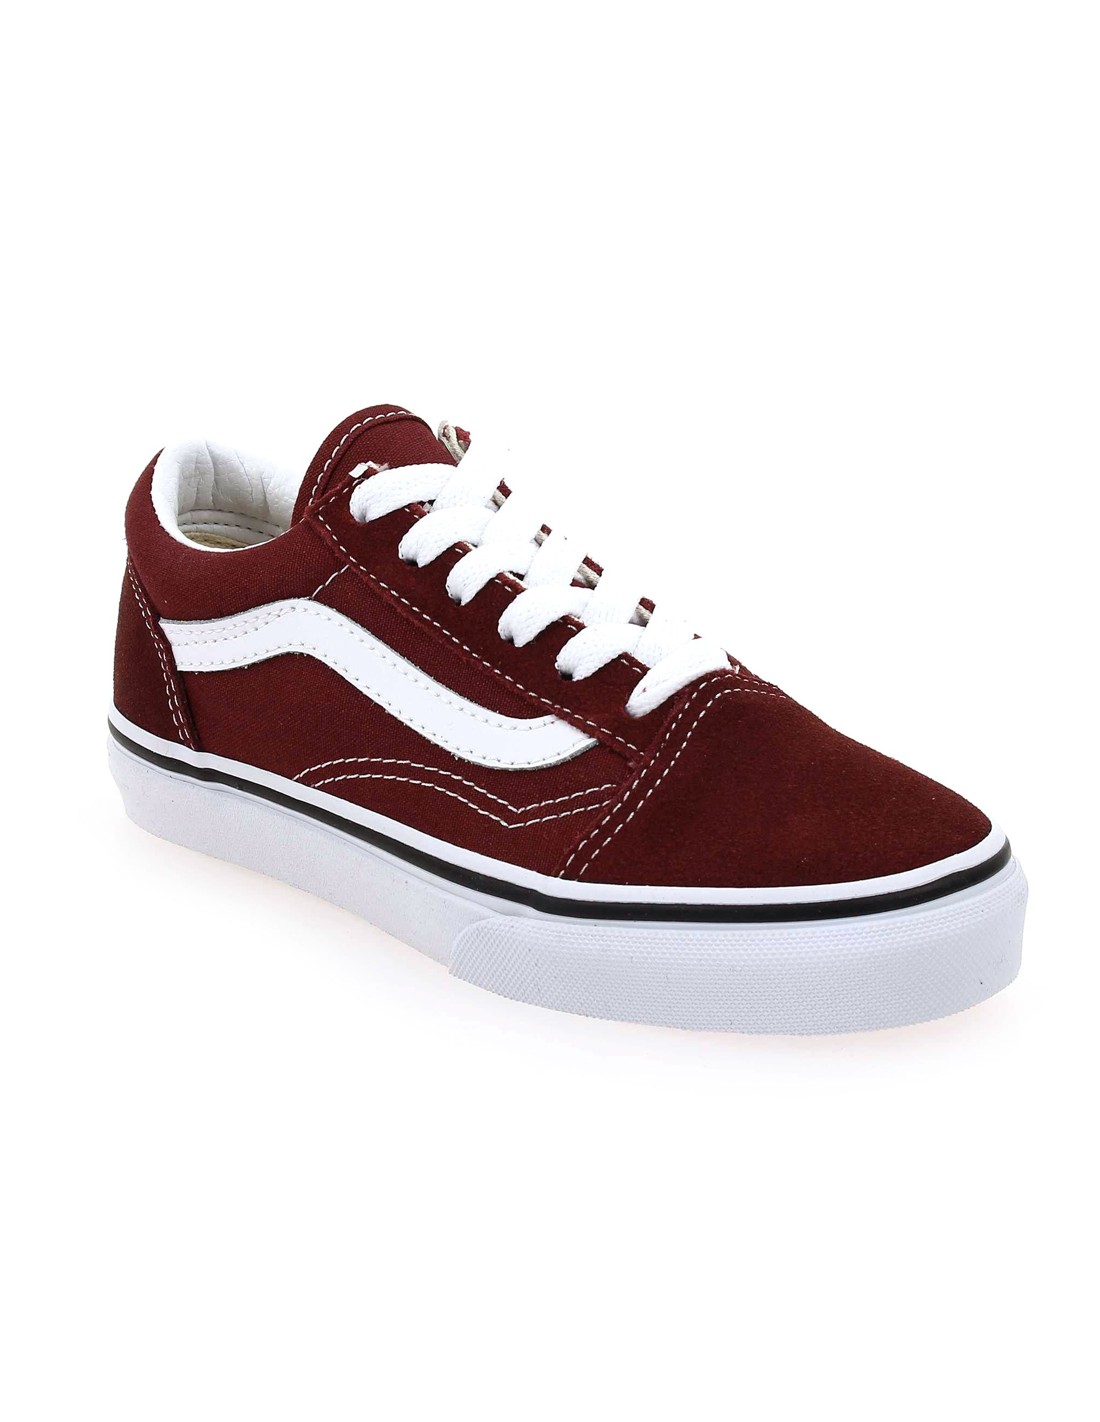 Vans Old Skool Skate Shoes Women's Size 7 Burgundy Red Sneakers